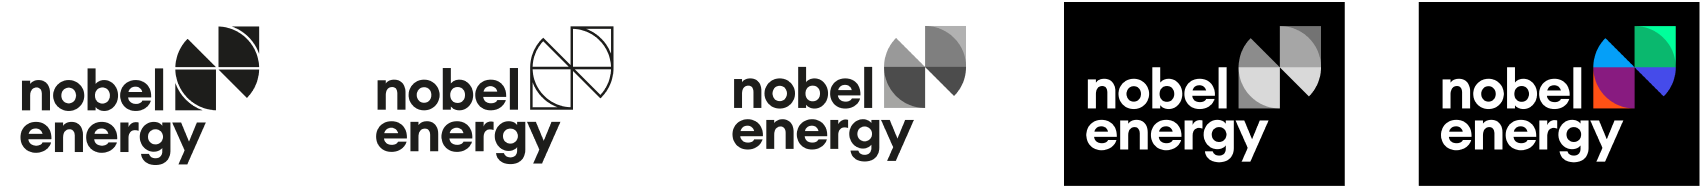 nobel energy logotype